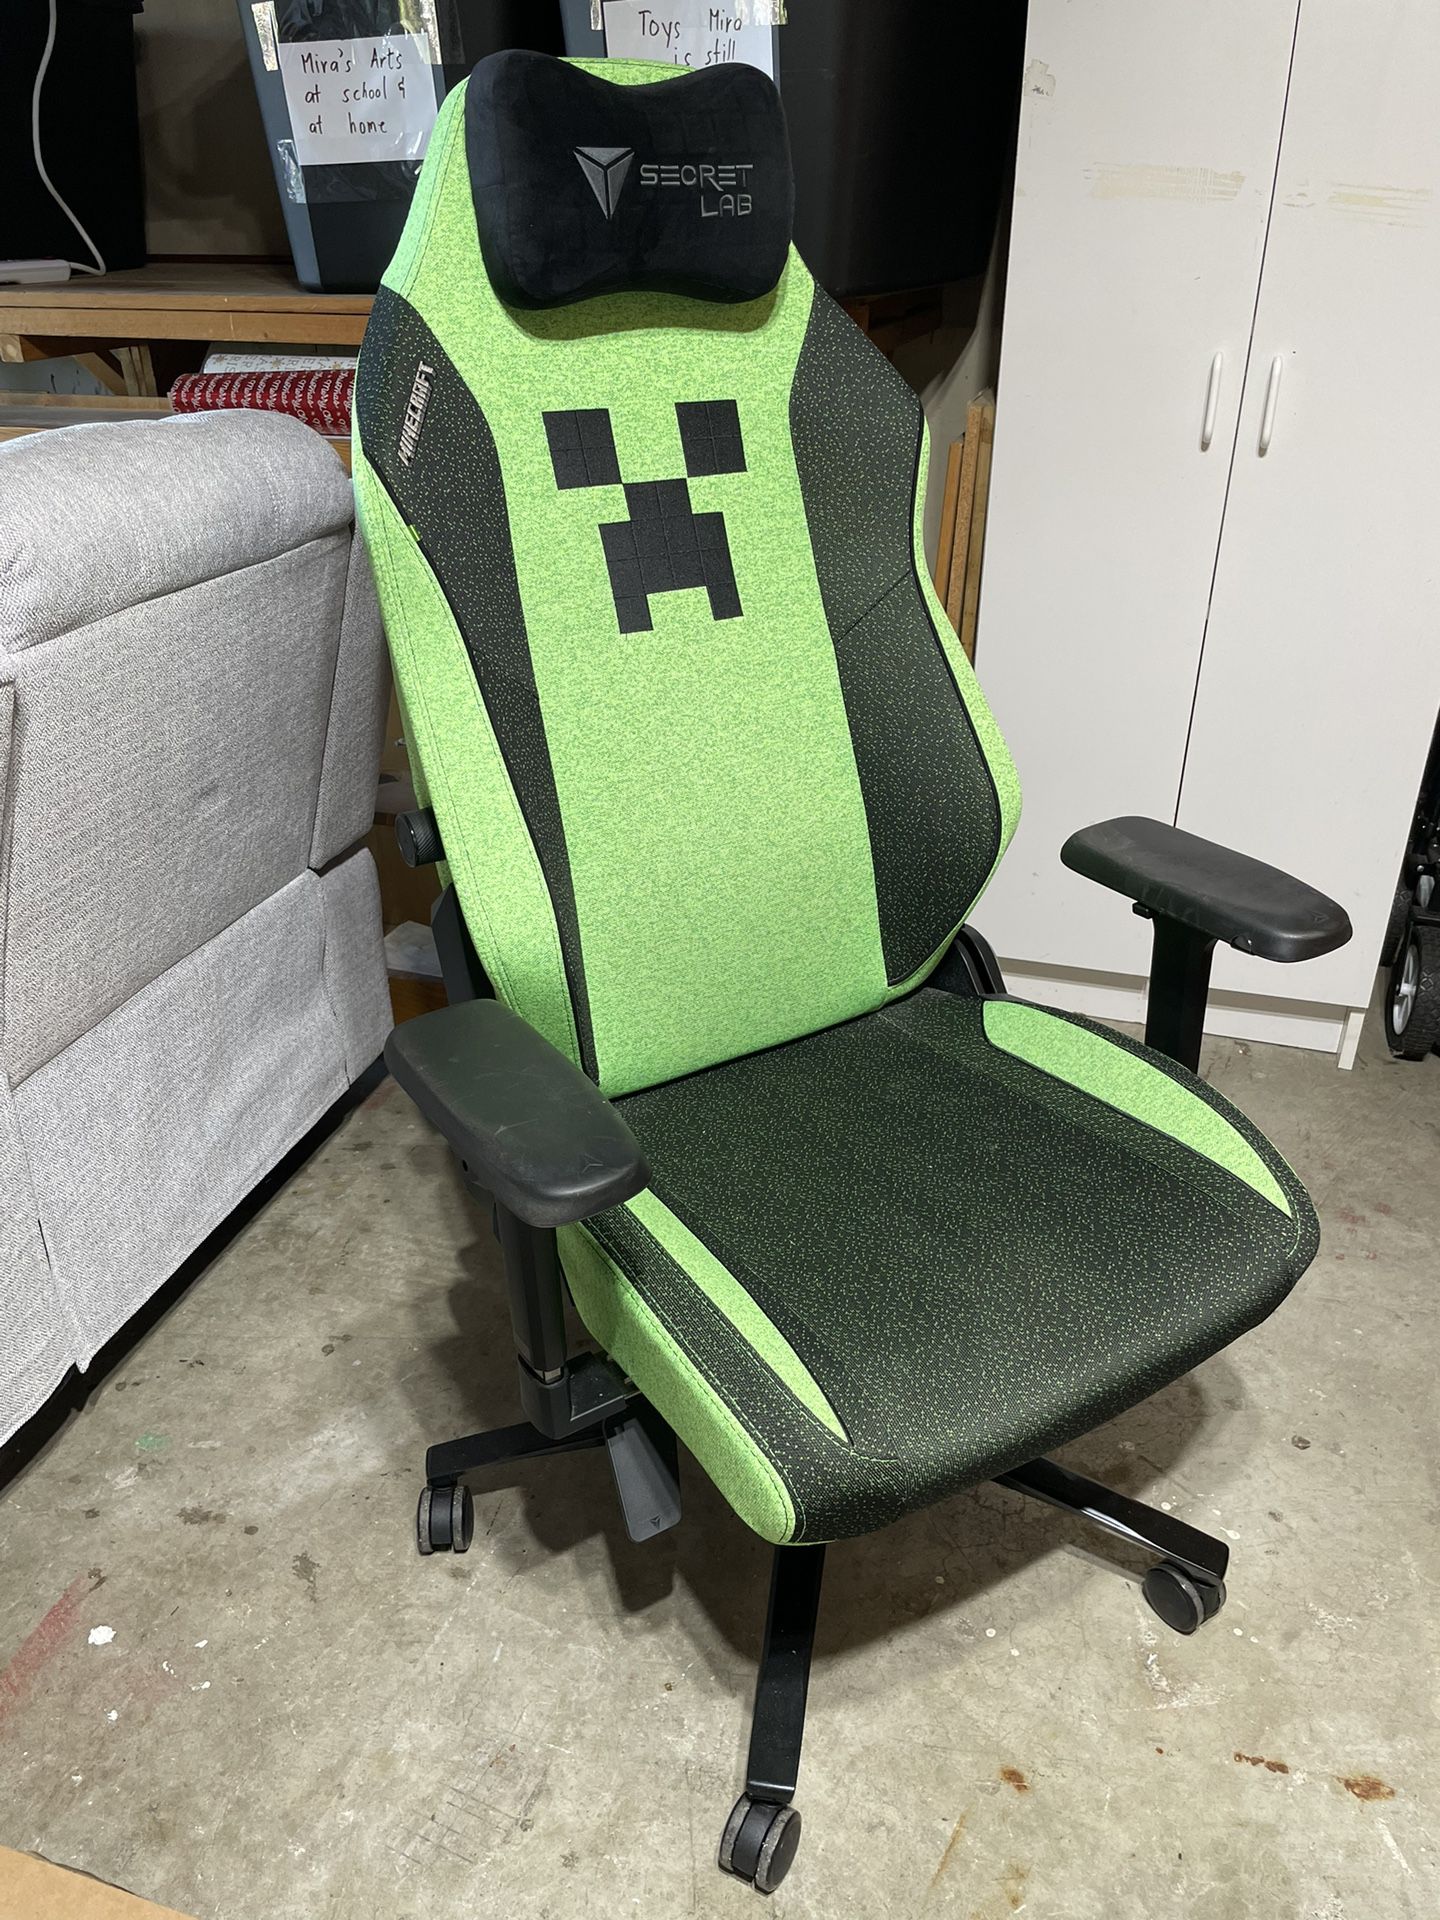 Secret lab Titan Xl Gaming chair